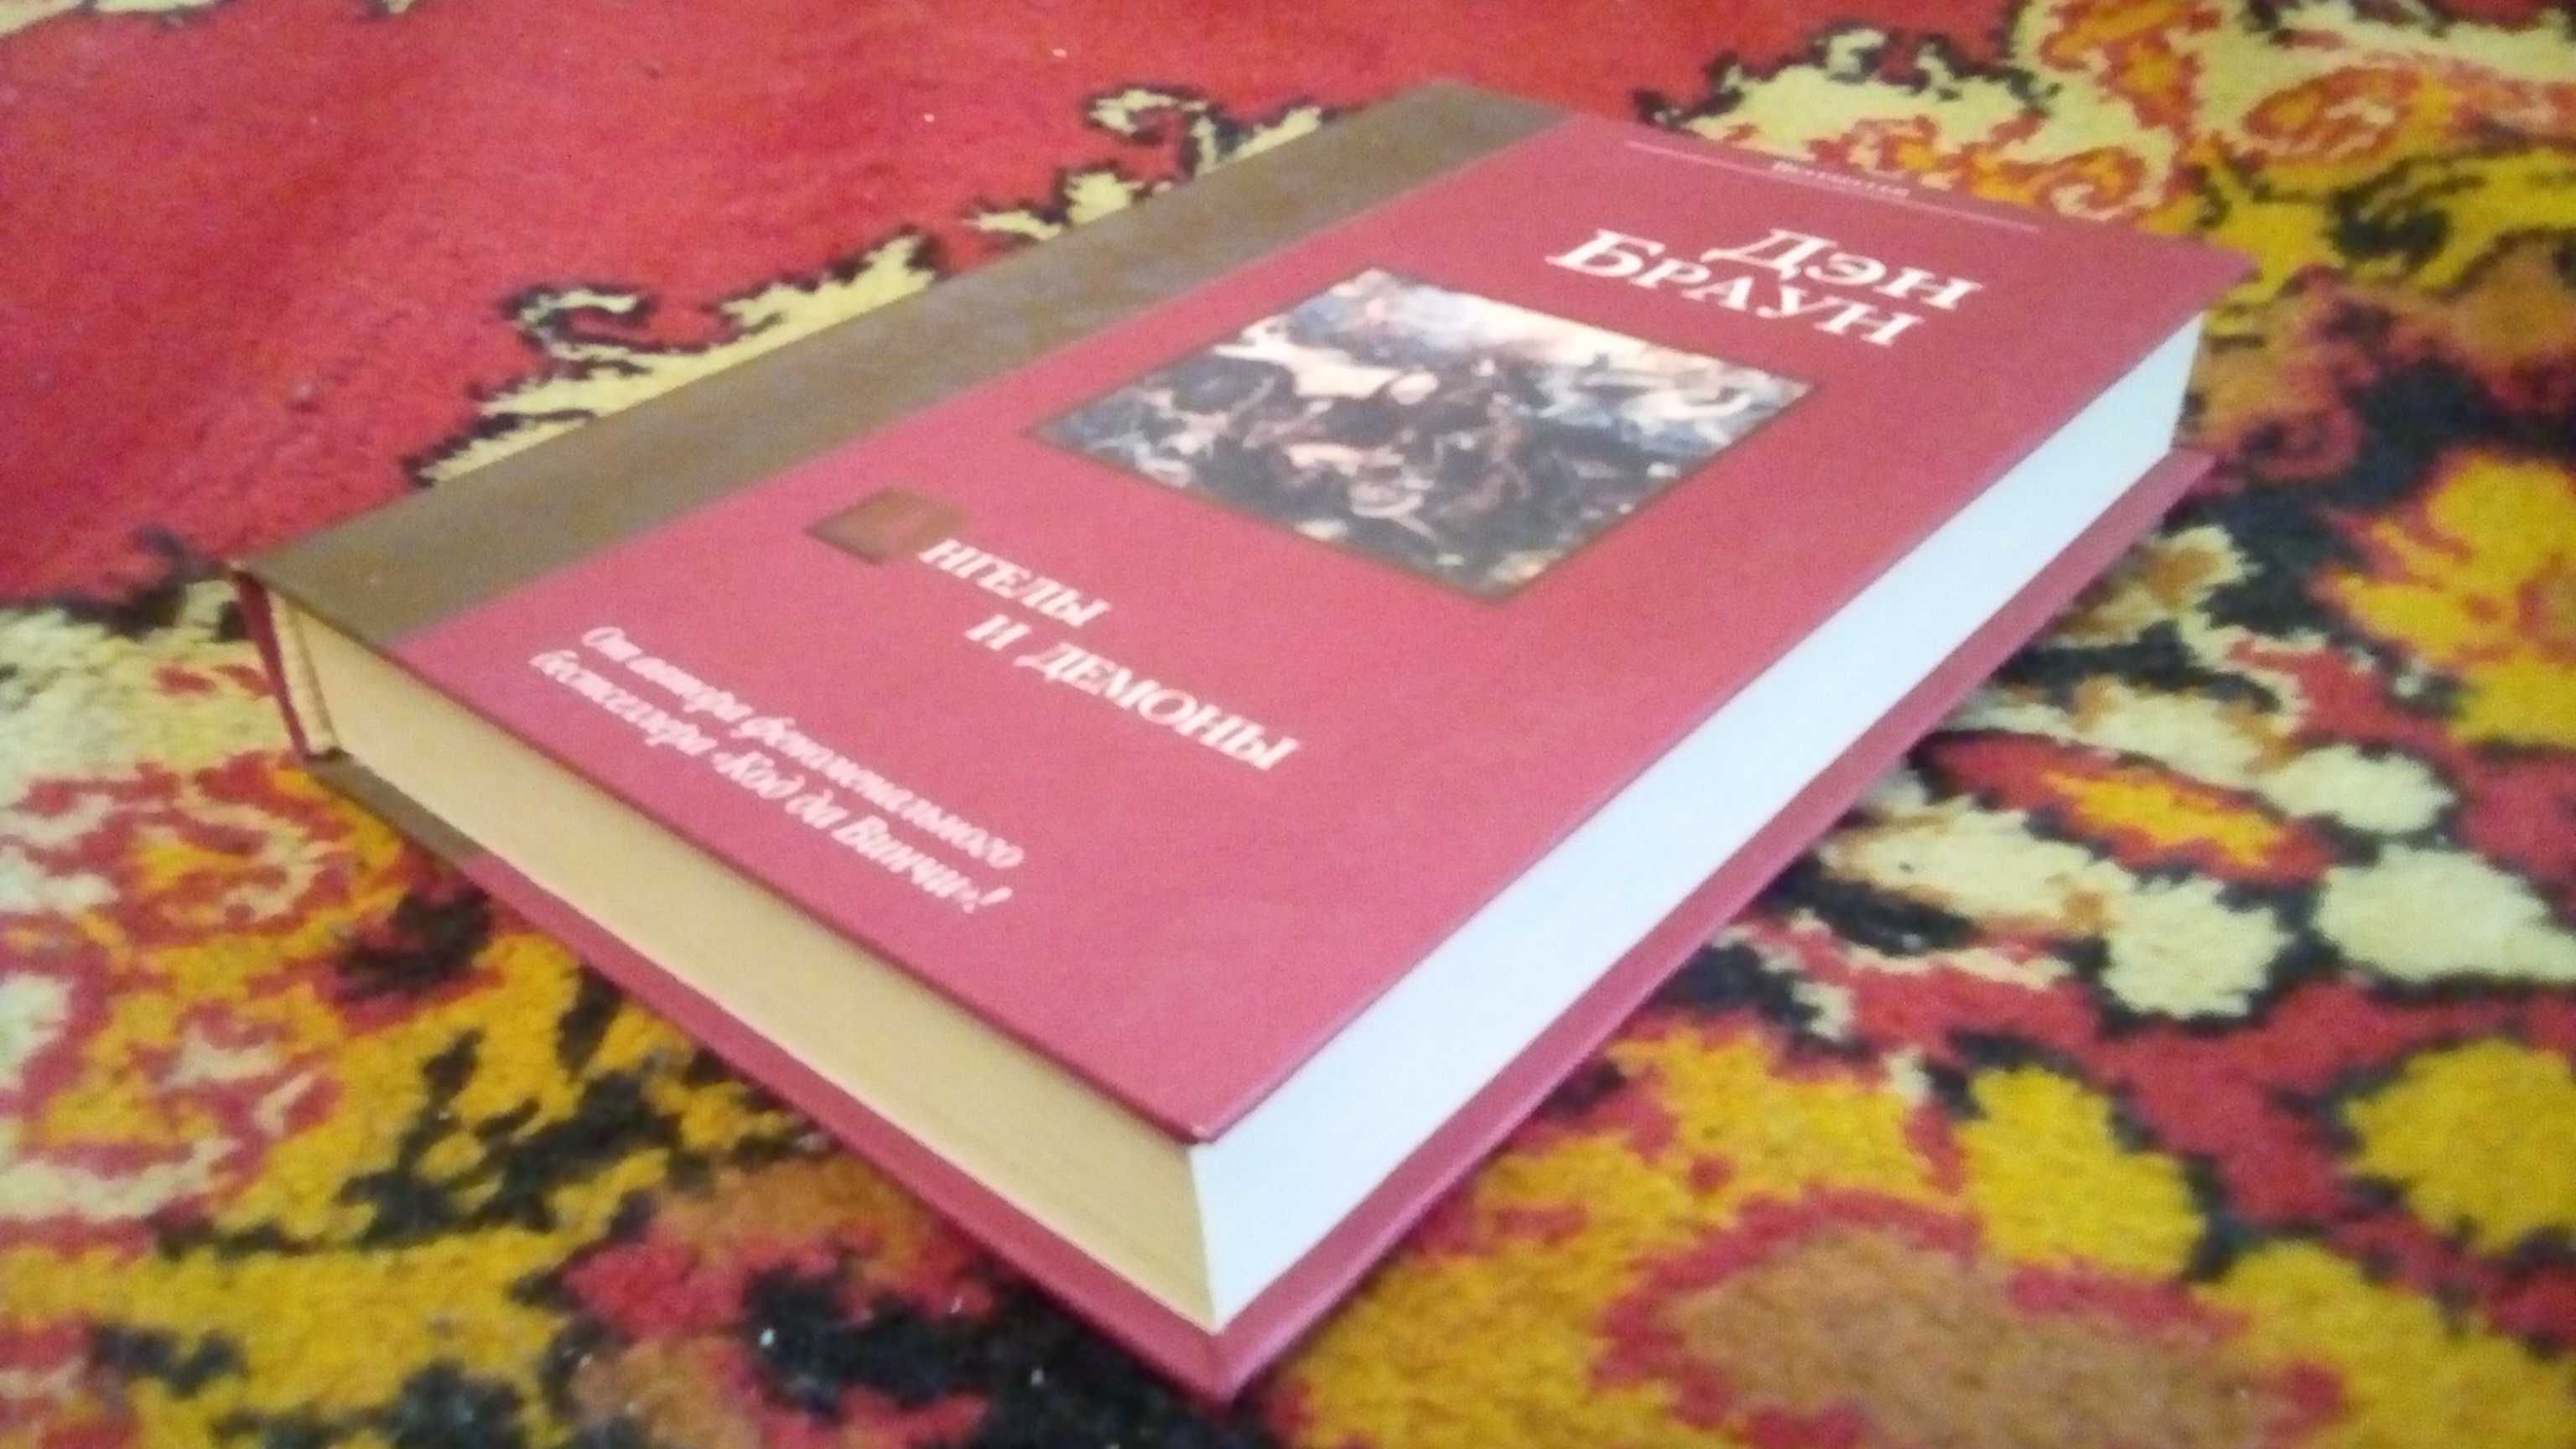 Книги Дэна Брауна (на украинском и русском)